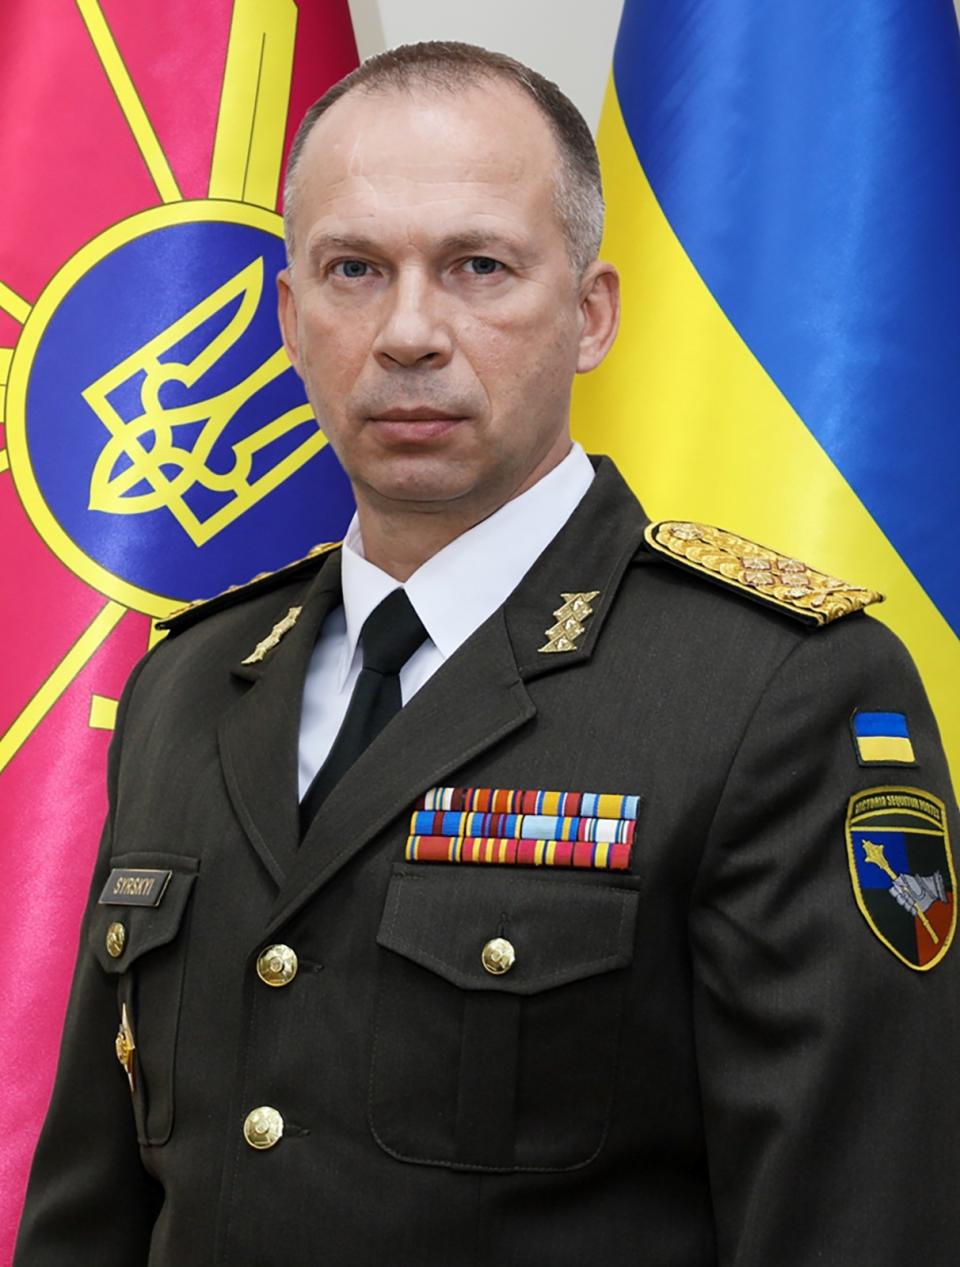 外号「雪豹」的陆军司令瑟尔斯基将接任乌军武装部队总司令。美联社